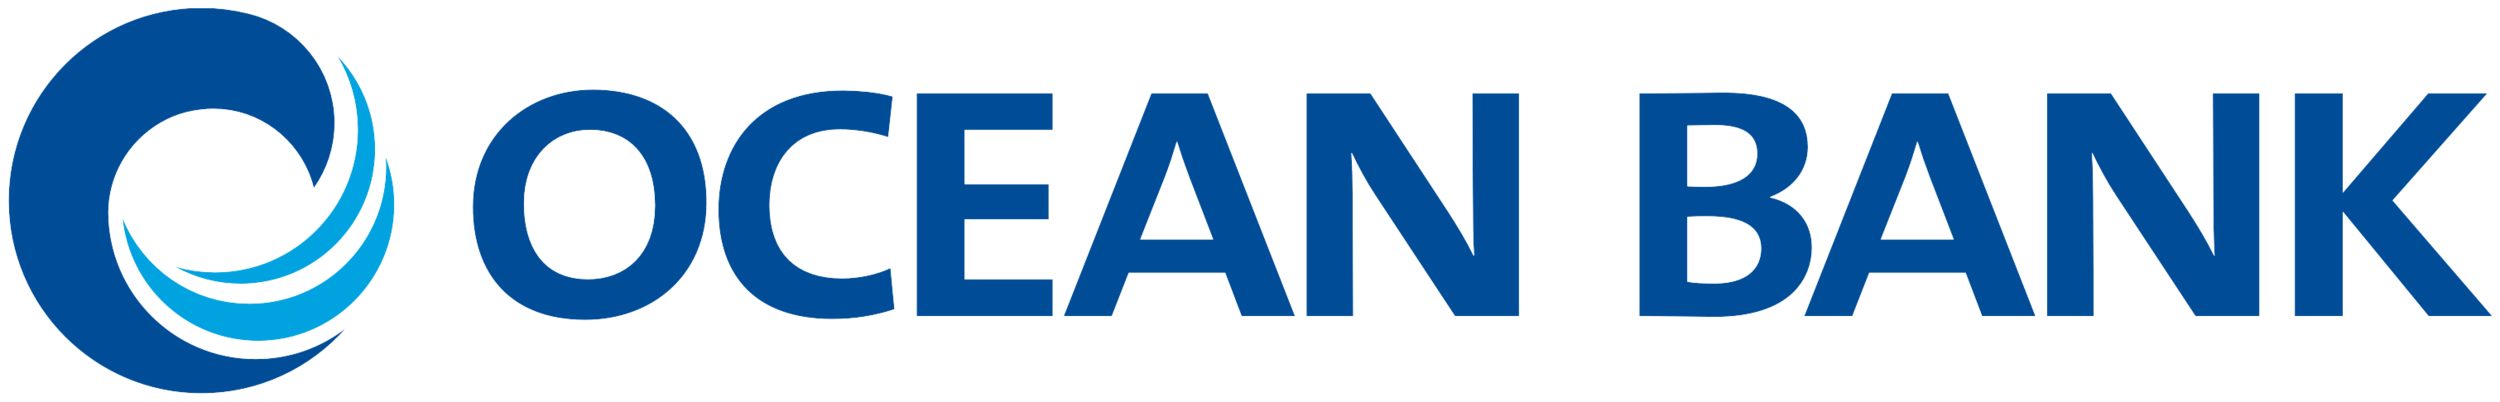 oceanbank-logo2.png